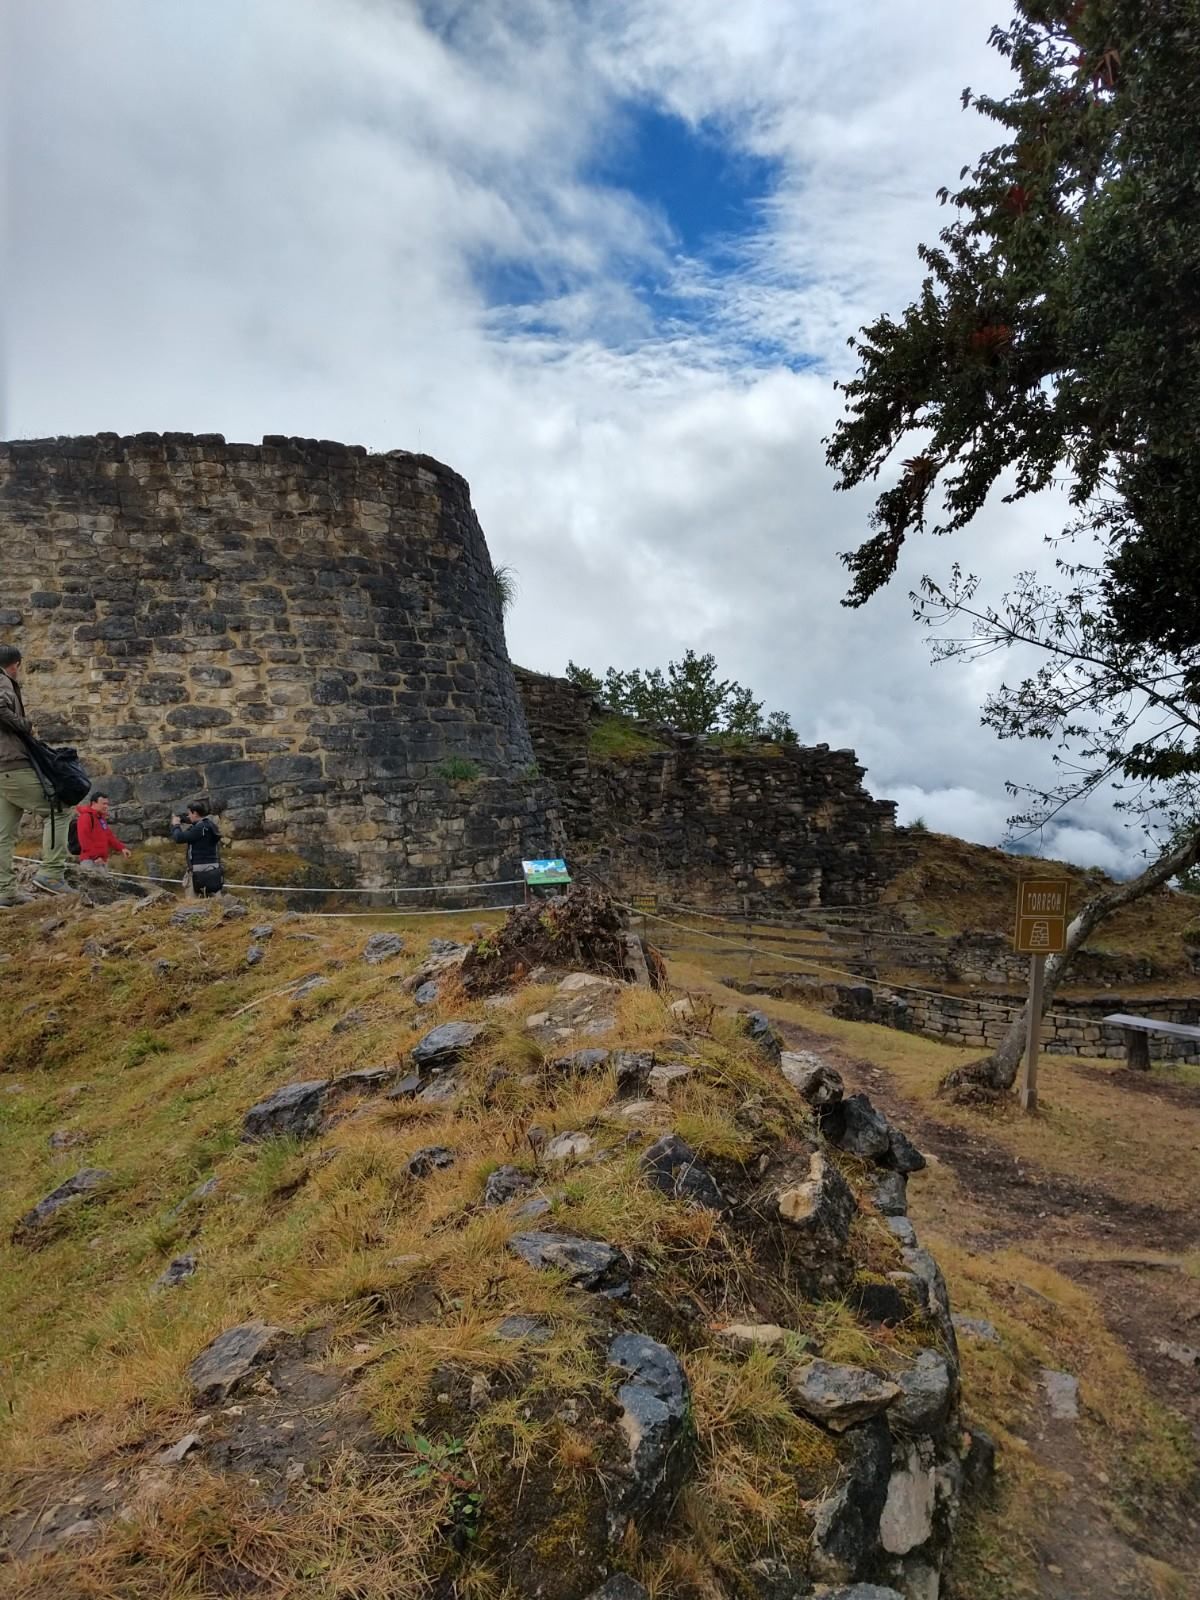 ’...Kuelap, el sitio de un espectacular asentamiento anterior a los Incas construido por los Guerreros de las Nubes de los Andes del norte’: The New York Times